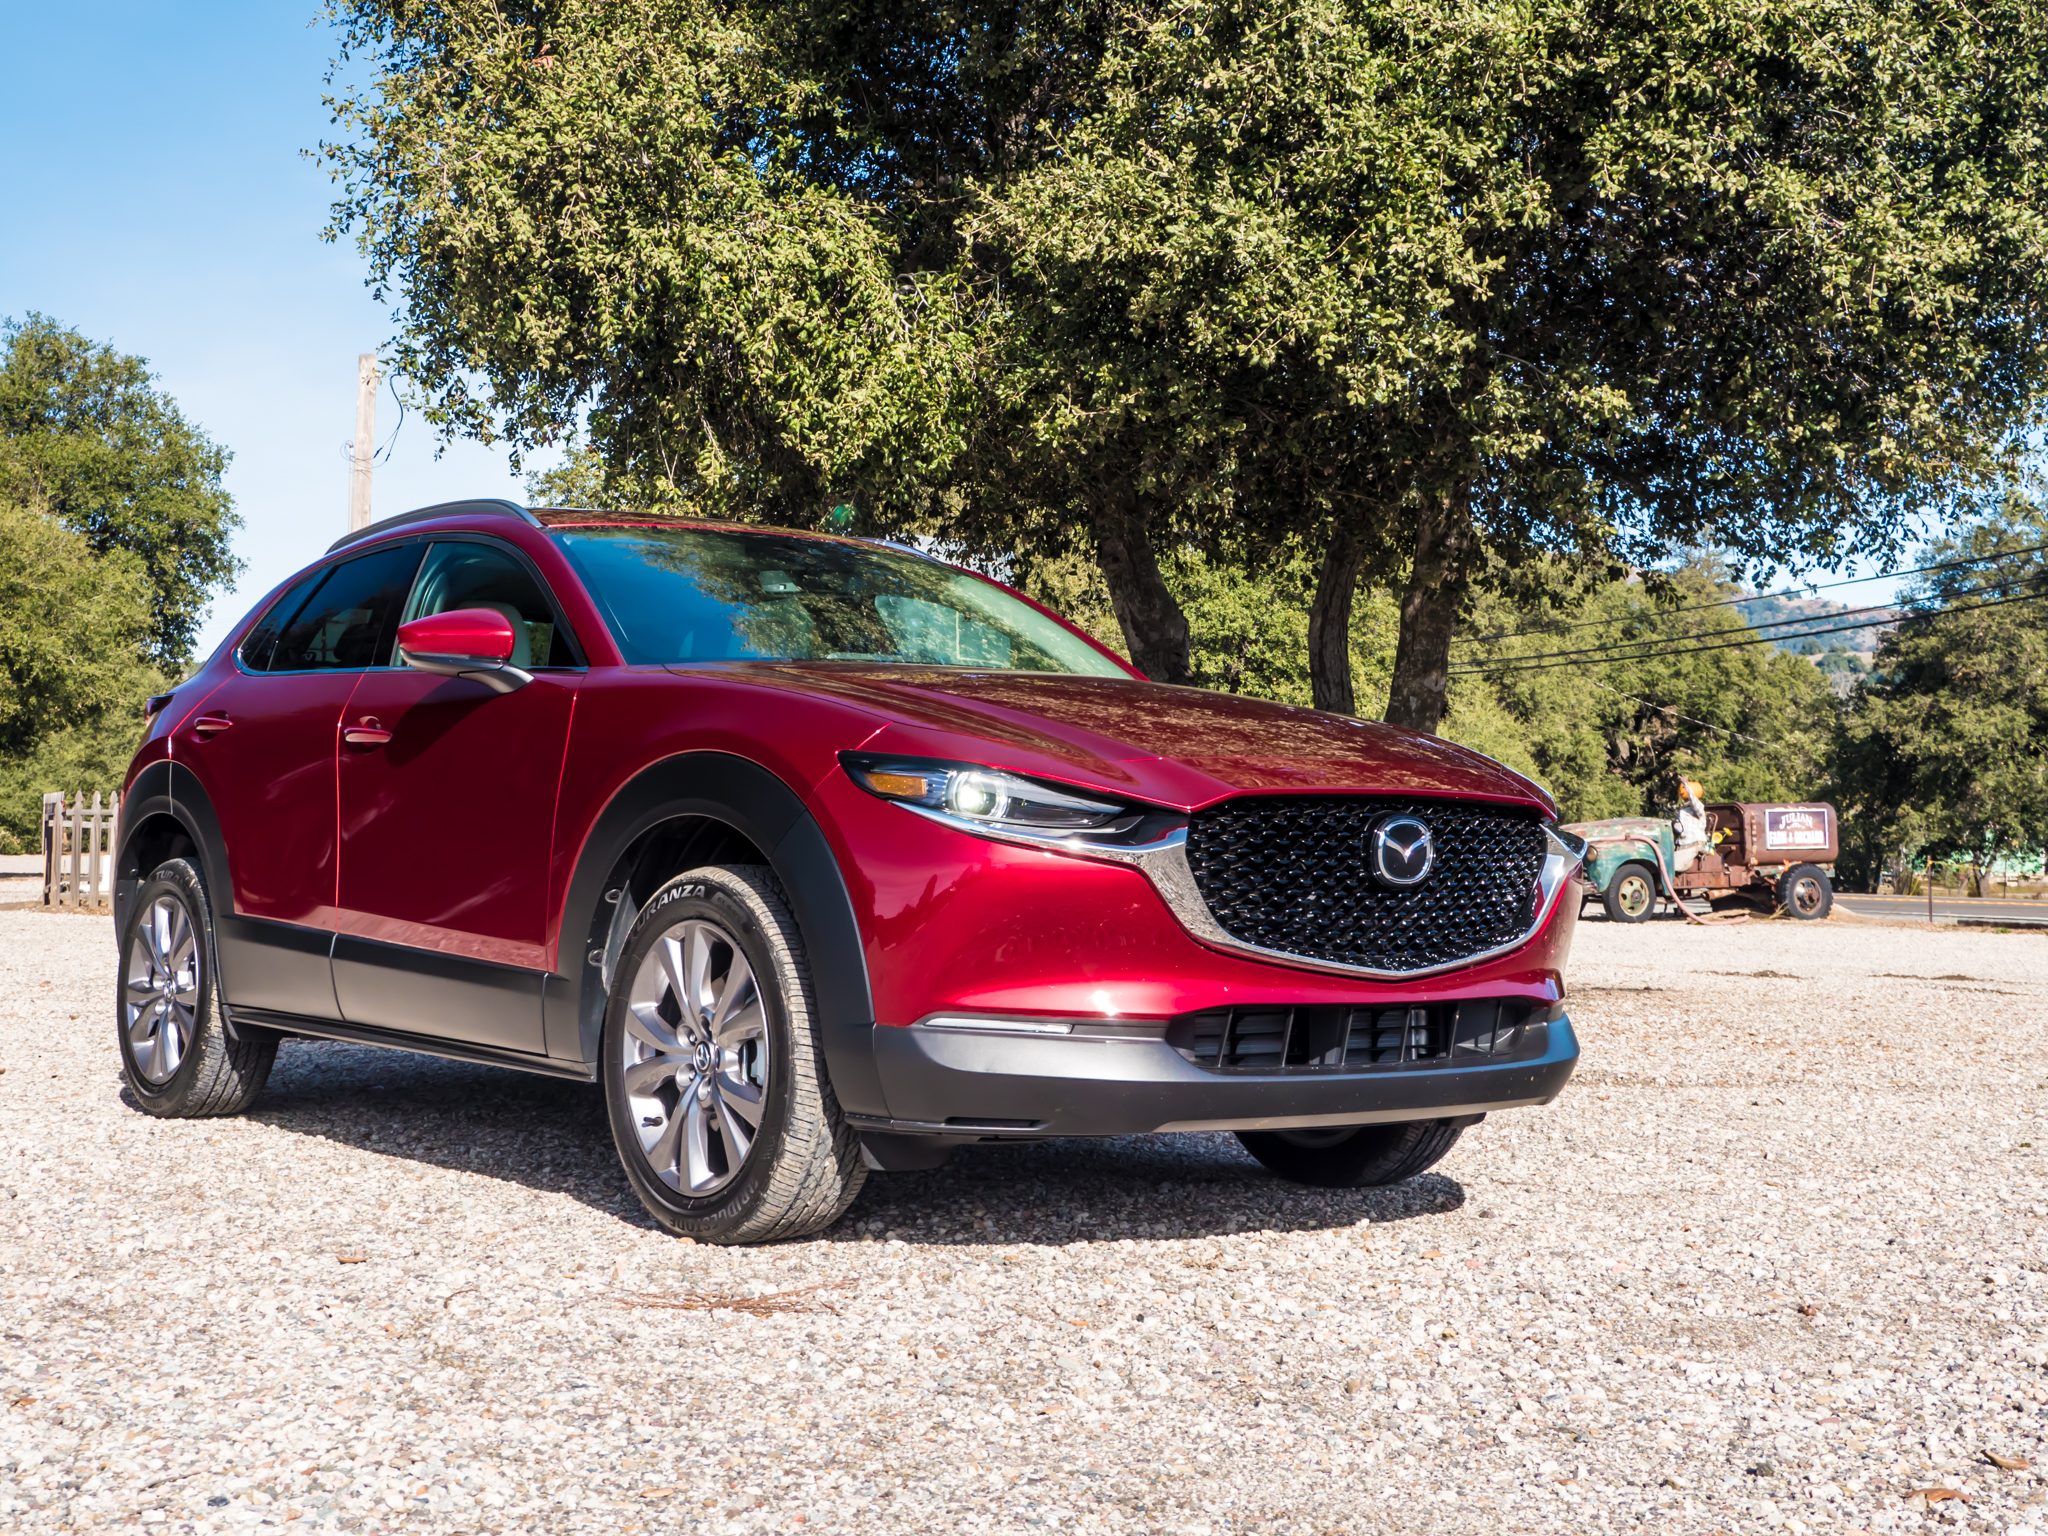 Mazda CX-30 to start under $30,000 